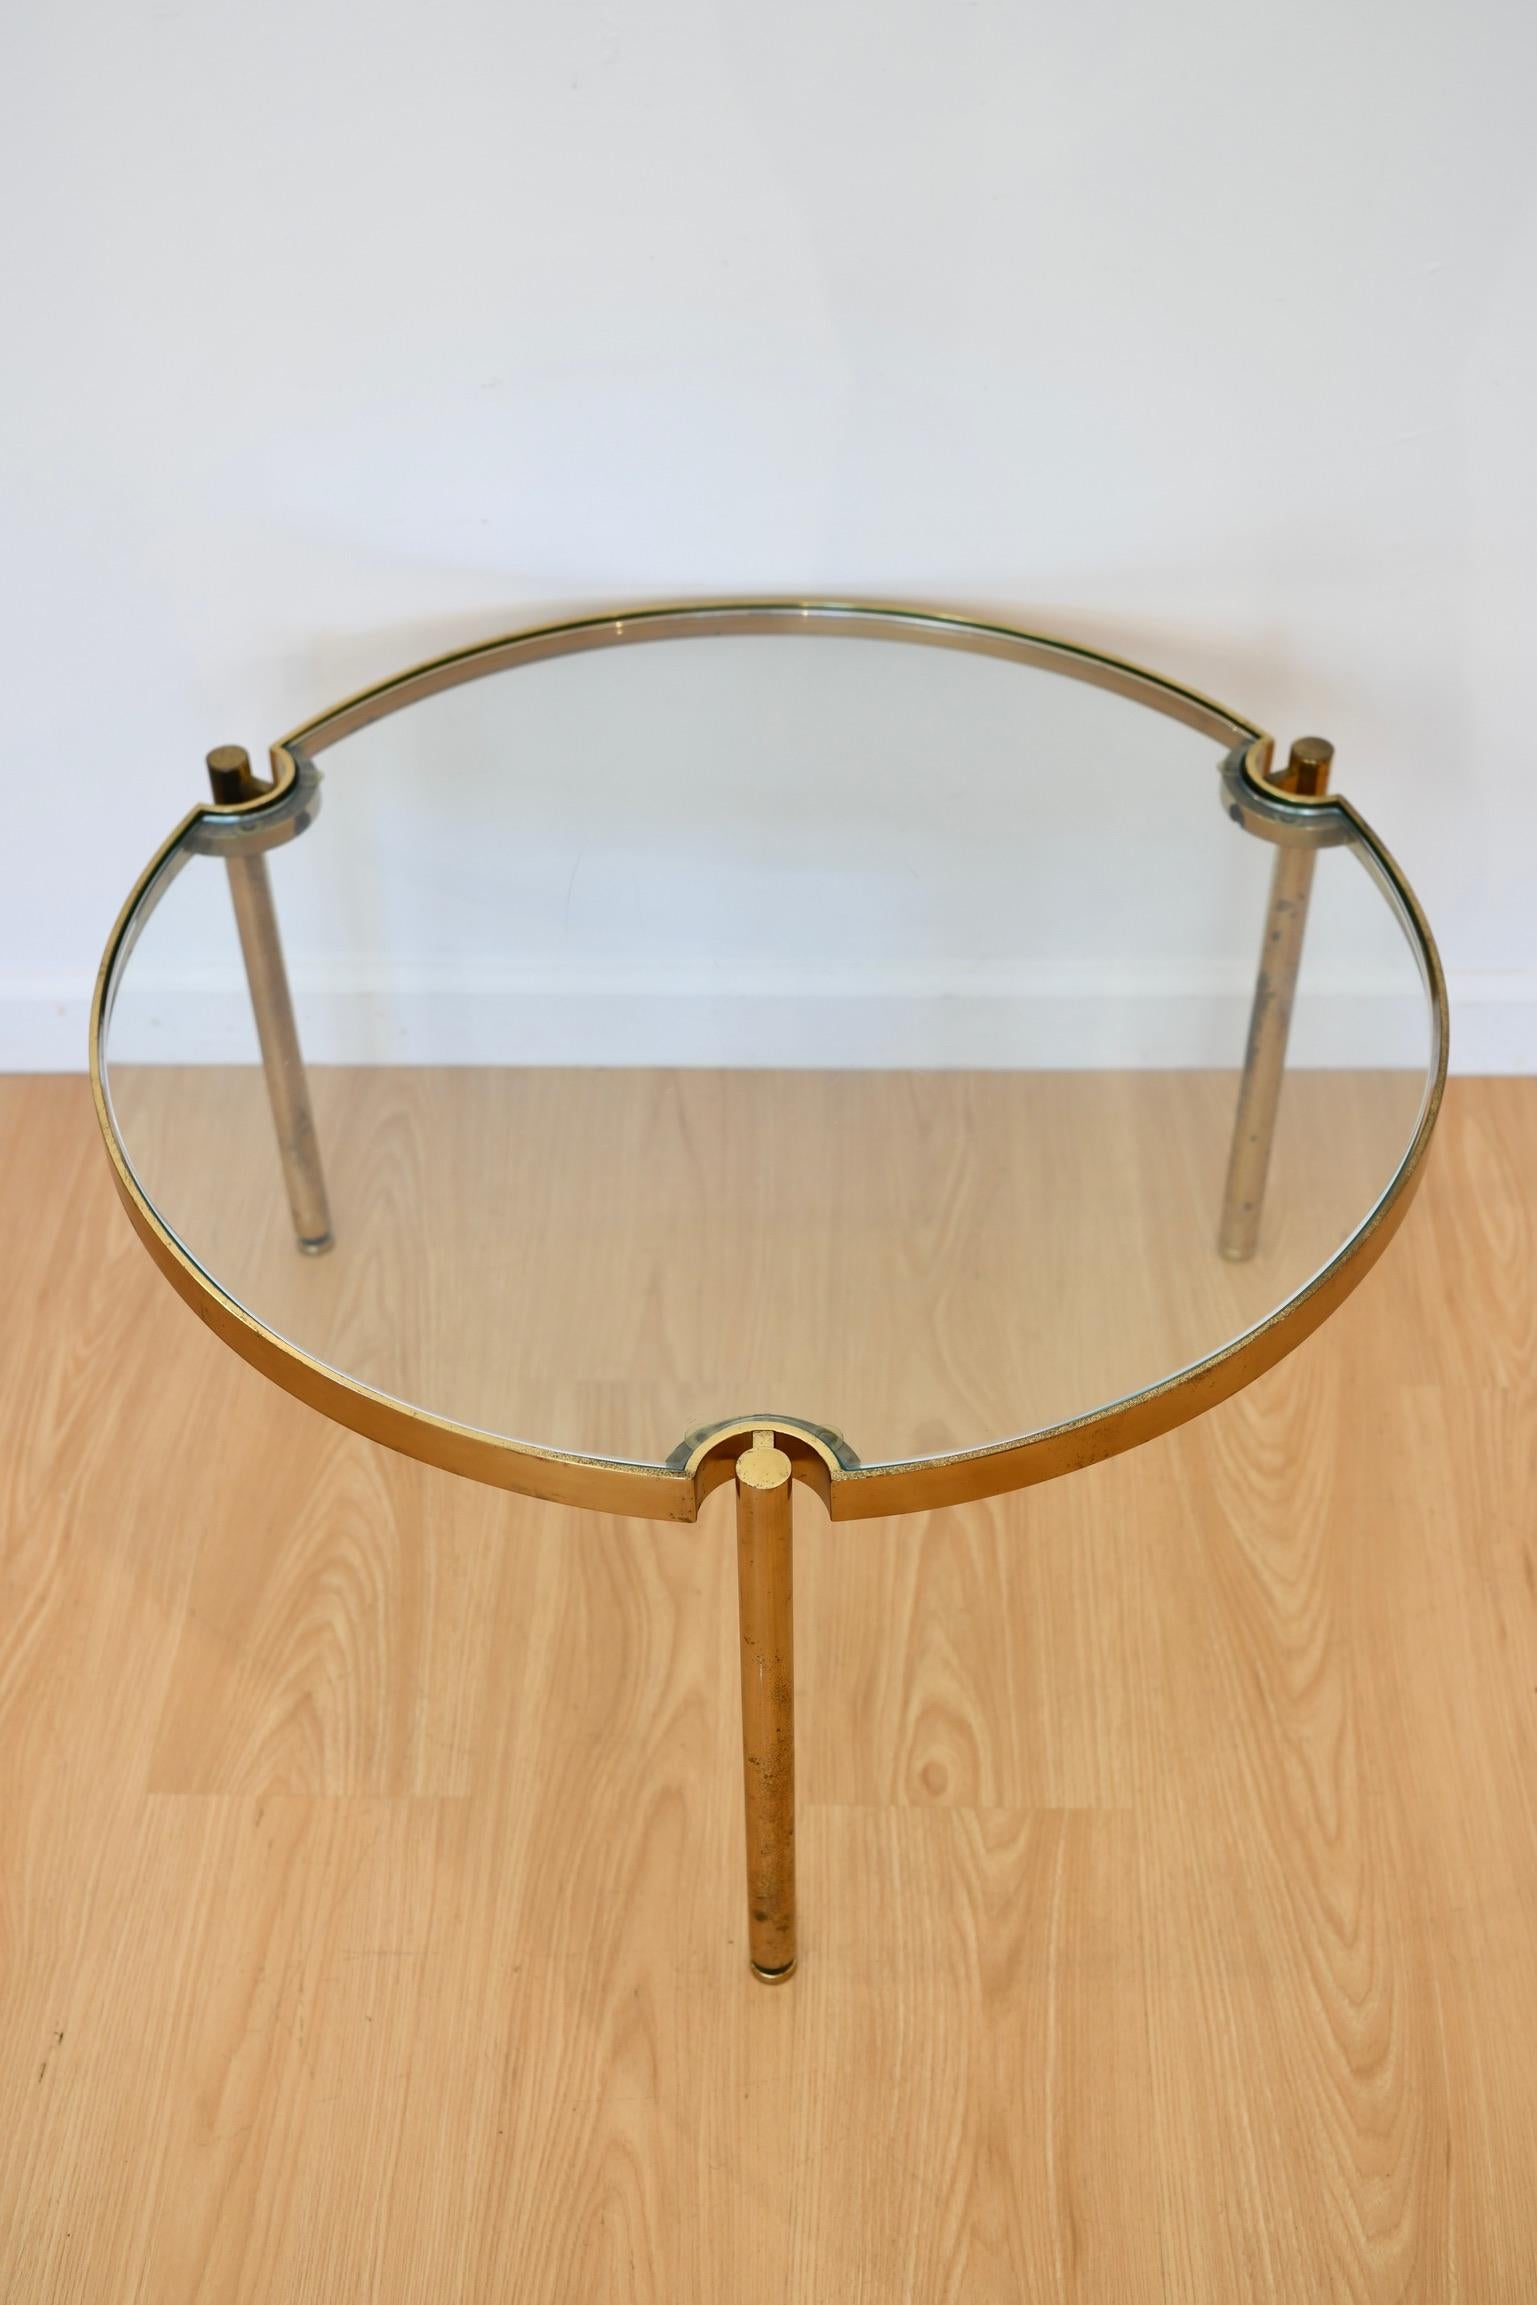 Table basse ronde à trois pieds en laiton avec plateau en verre. Quelques rayures sur le verre. Dimensions : 19 